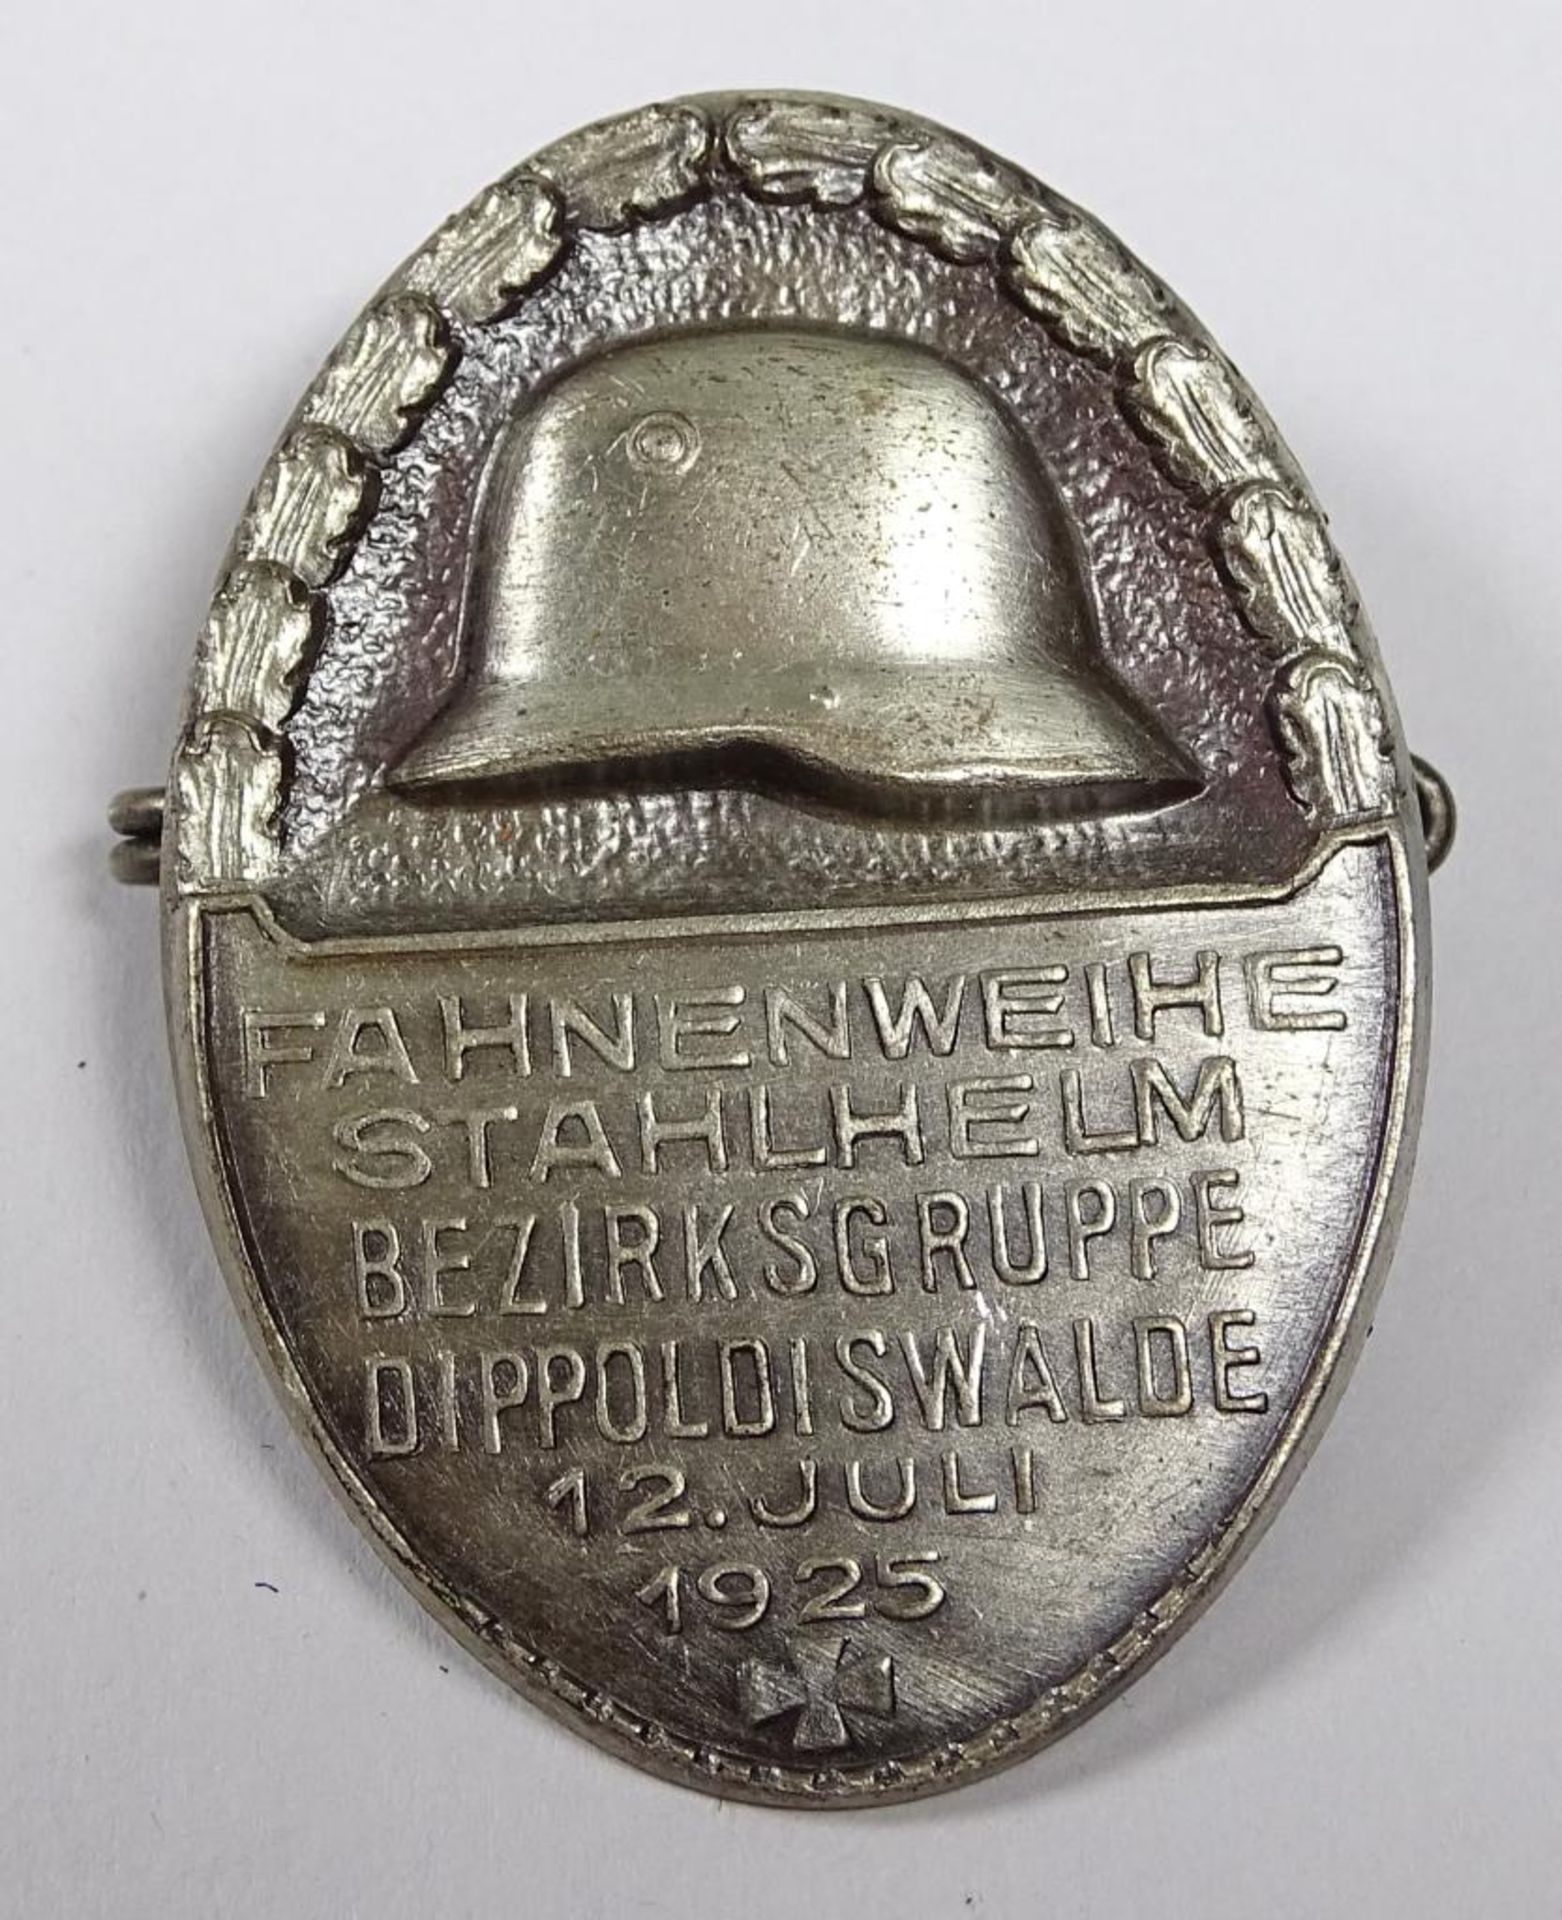 Anstecker ,"Fahnenweihe Stahlhelm Bezirksgruppe Dippoldiswalde 12.Juli 1925"